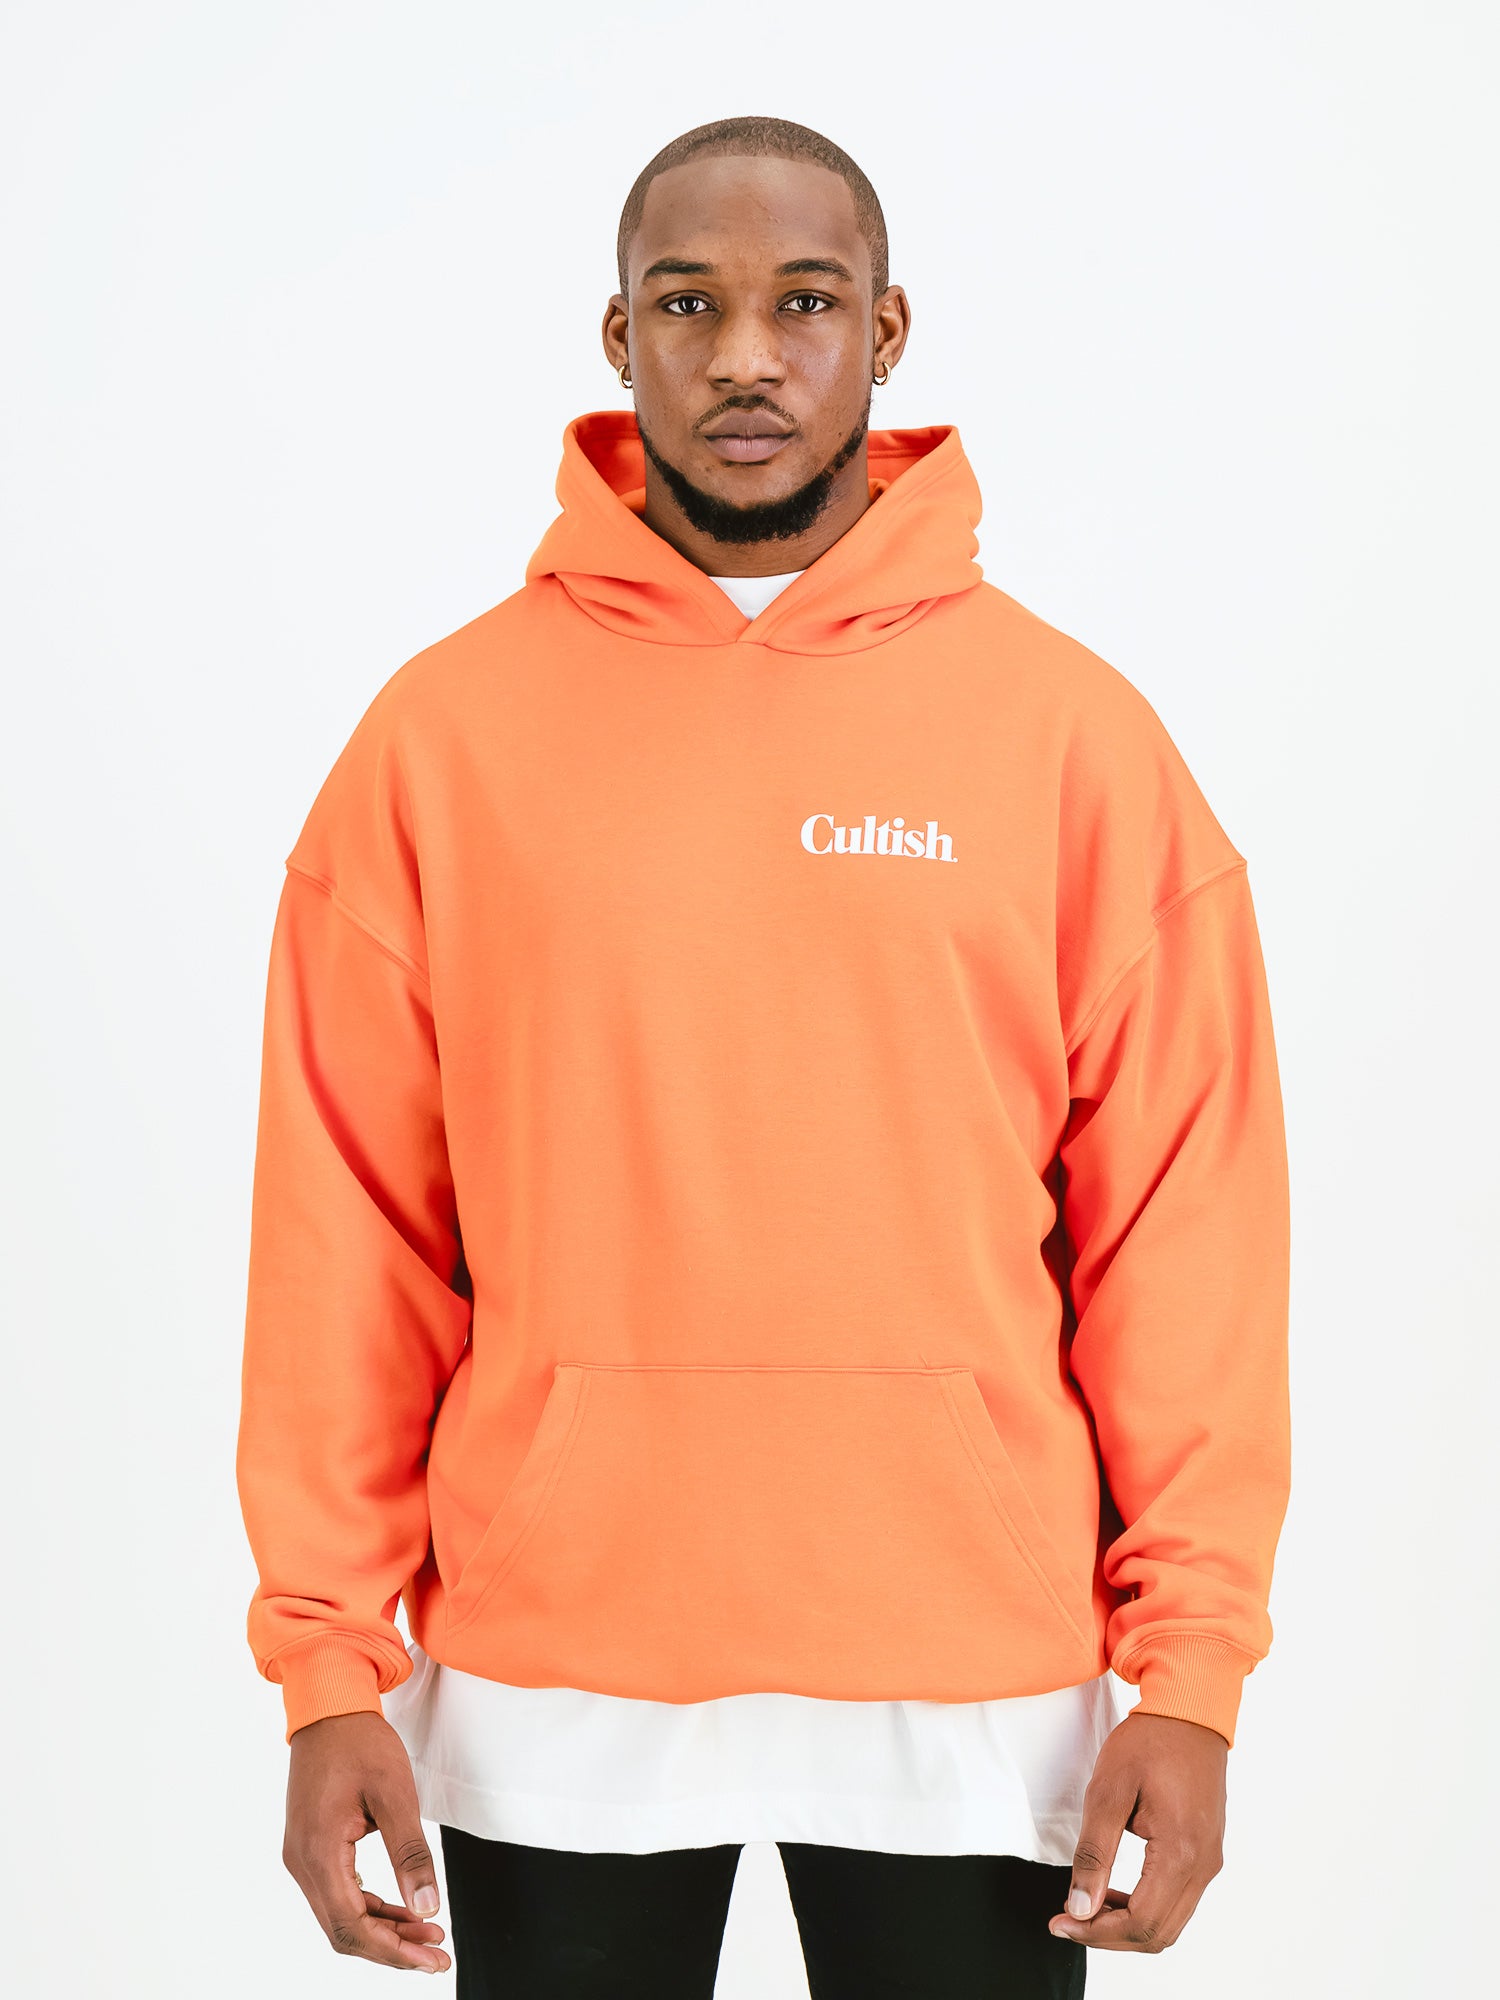 frank ocean hoodie womens chanels orange